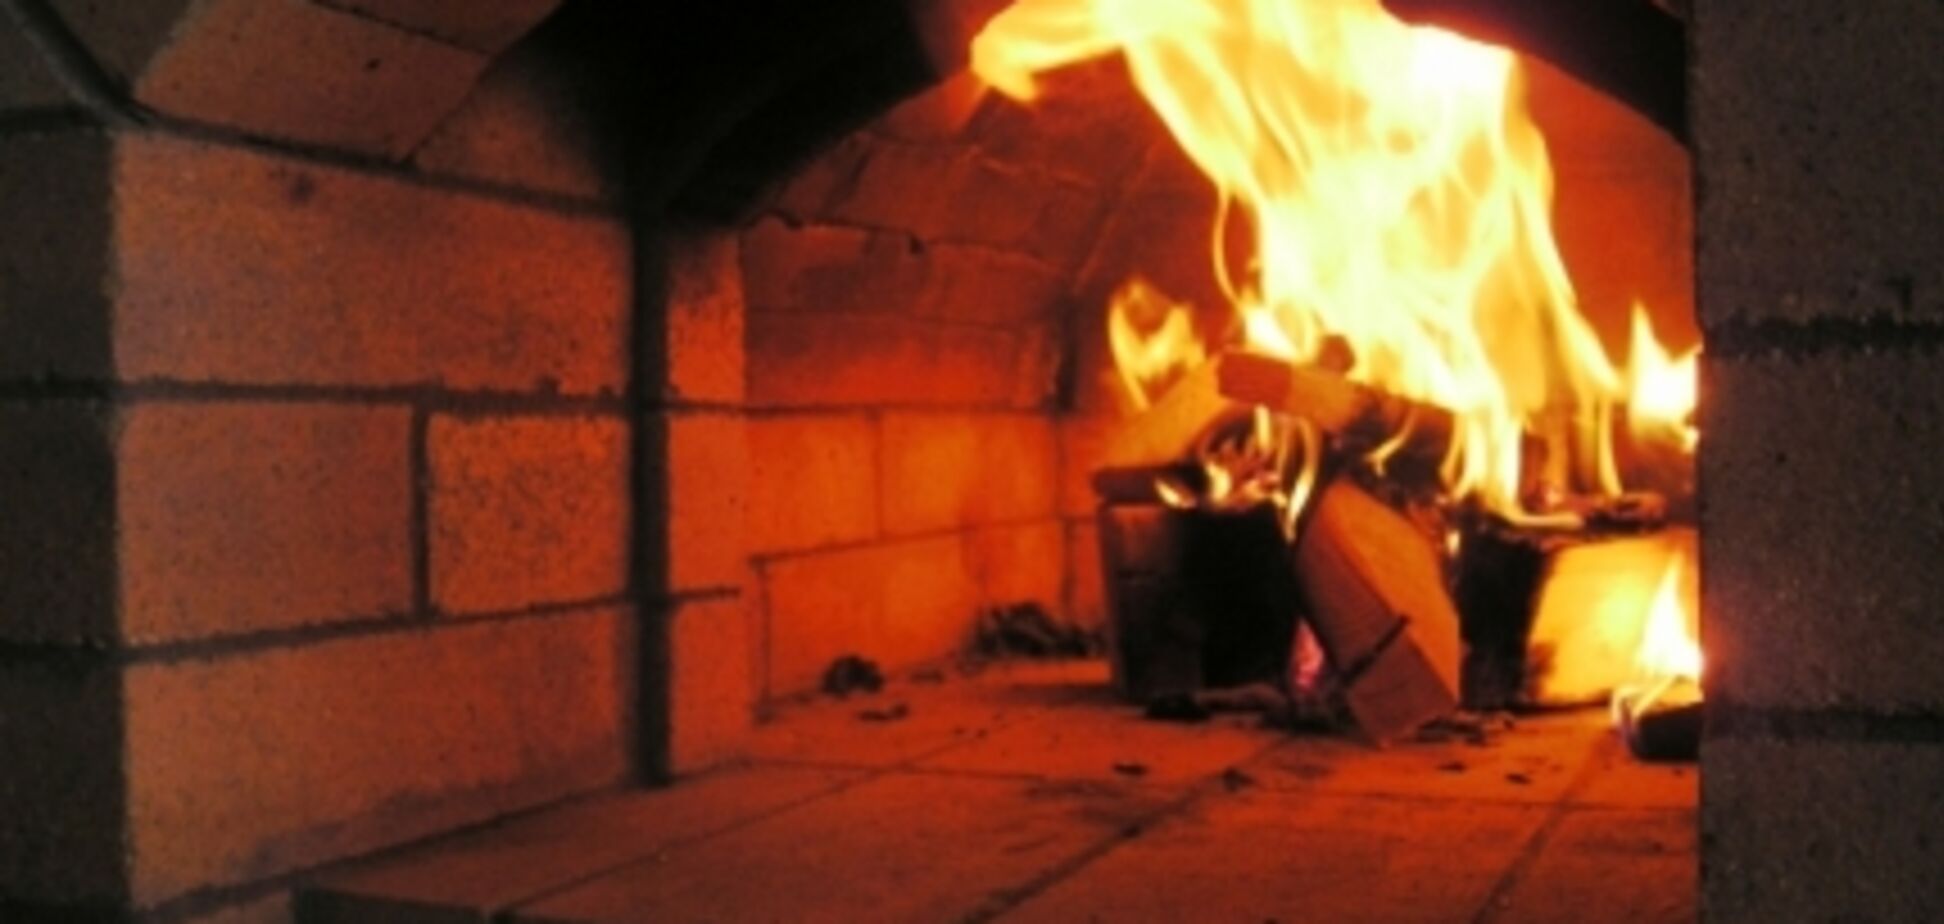 'Натуральний шок': у Казахстані бабуся спалила онучку в печі